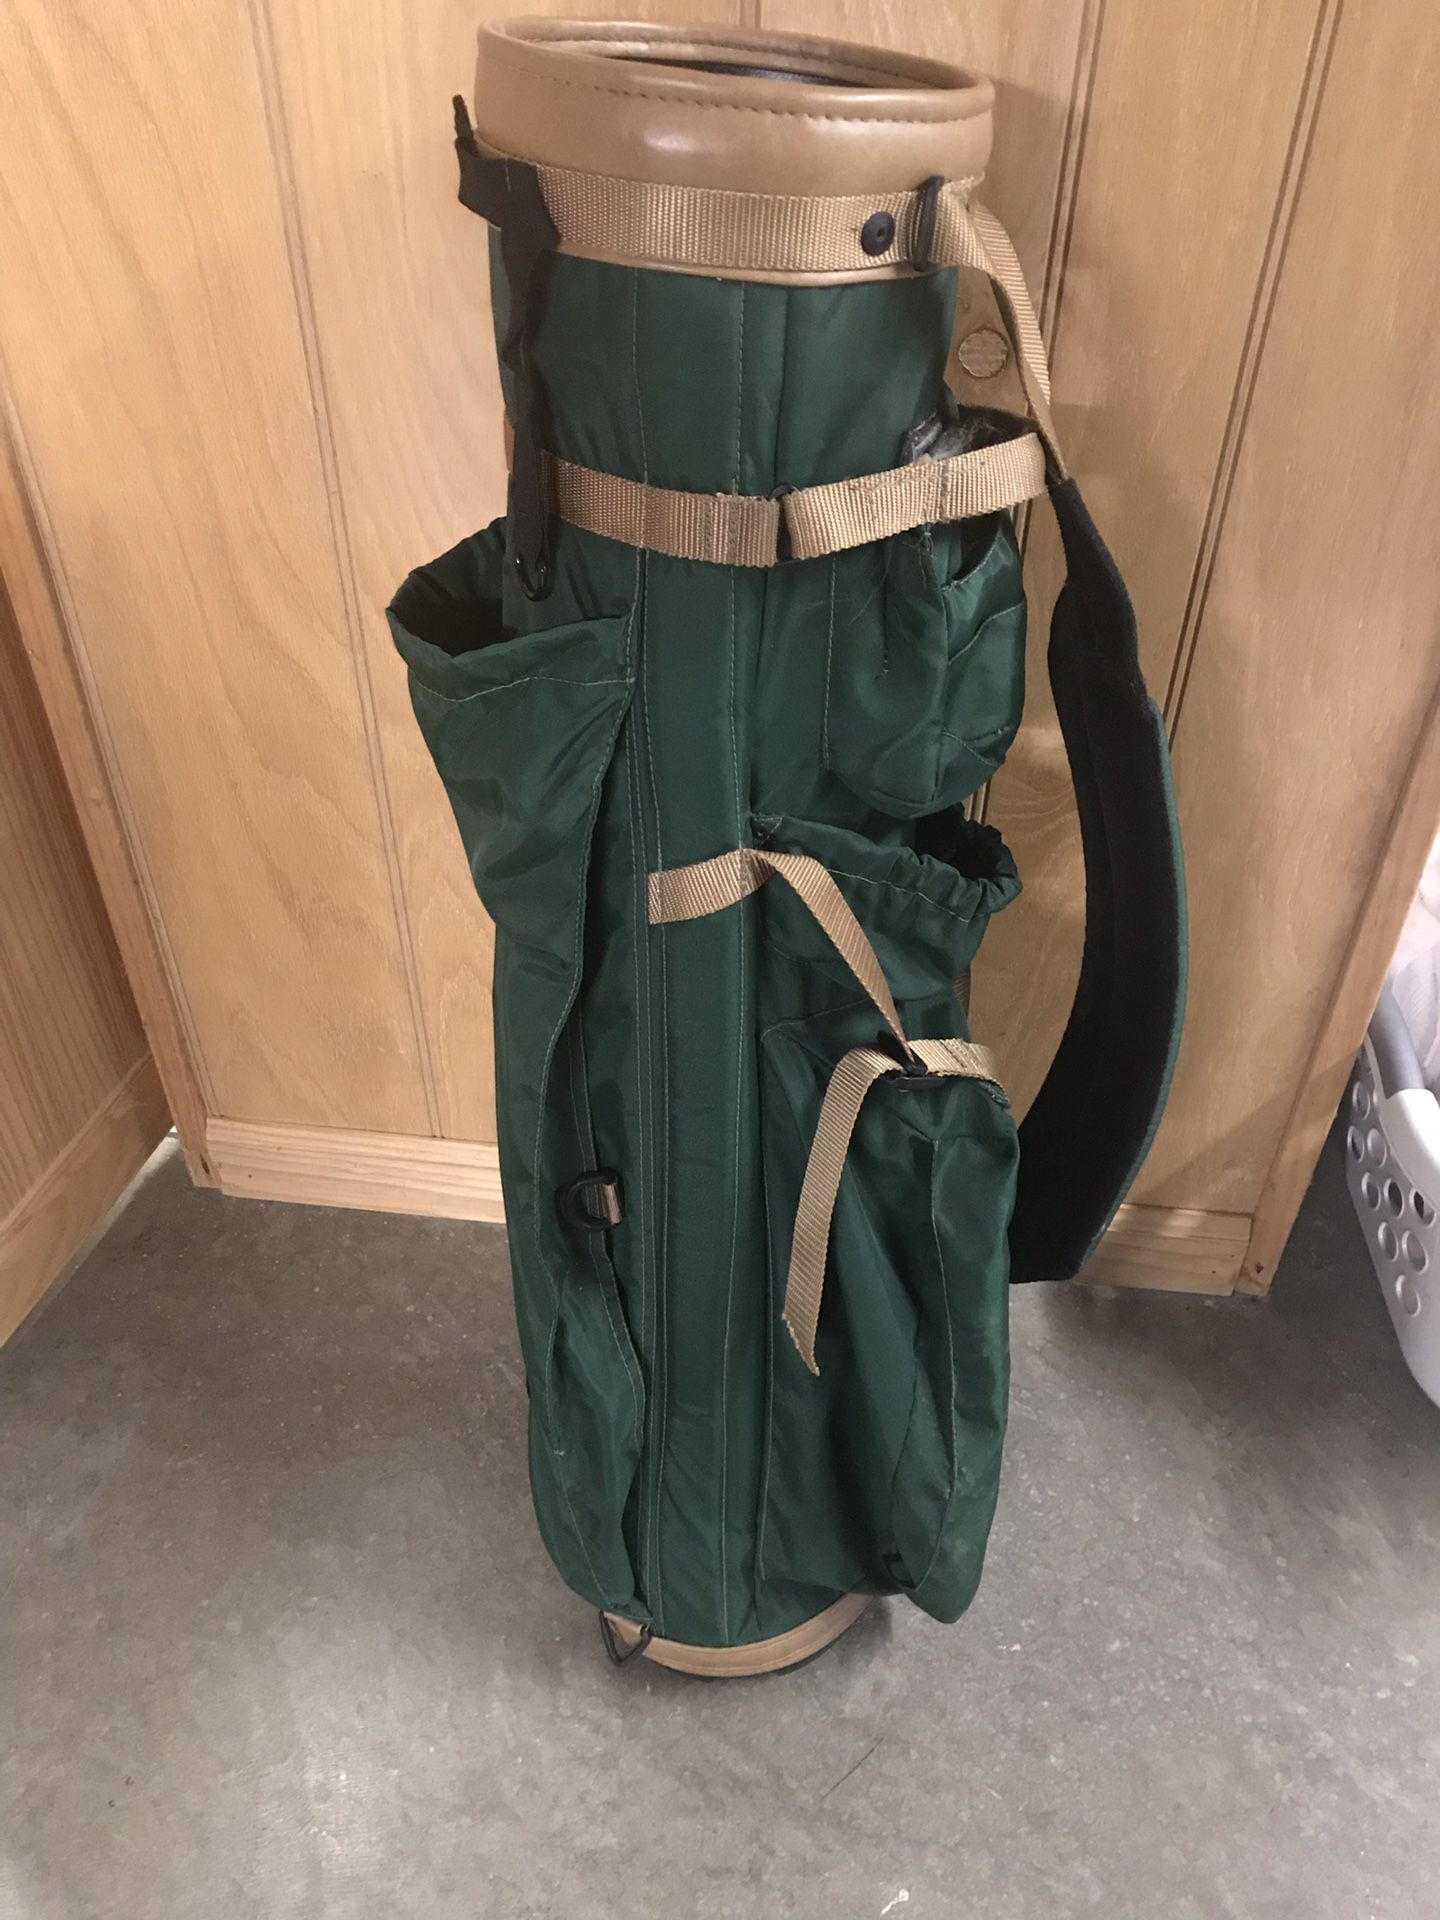 Golf bag by Leonardo nylon carry bag